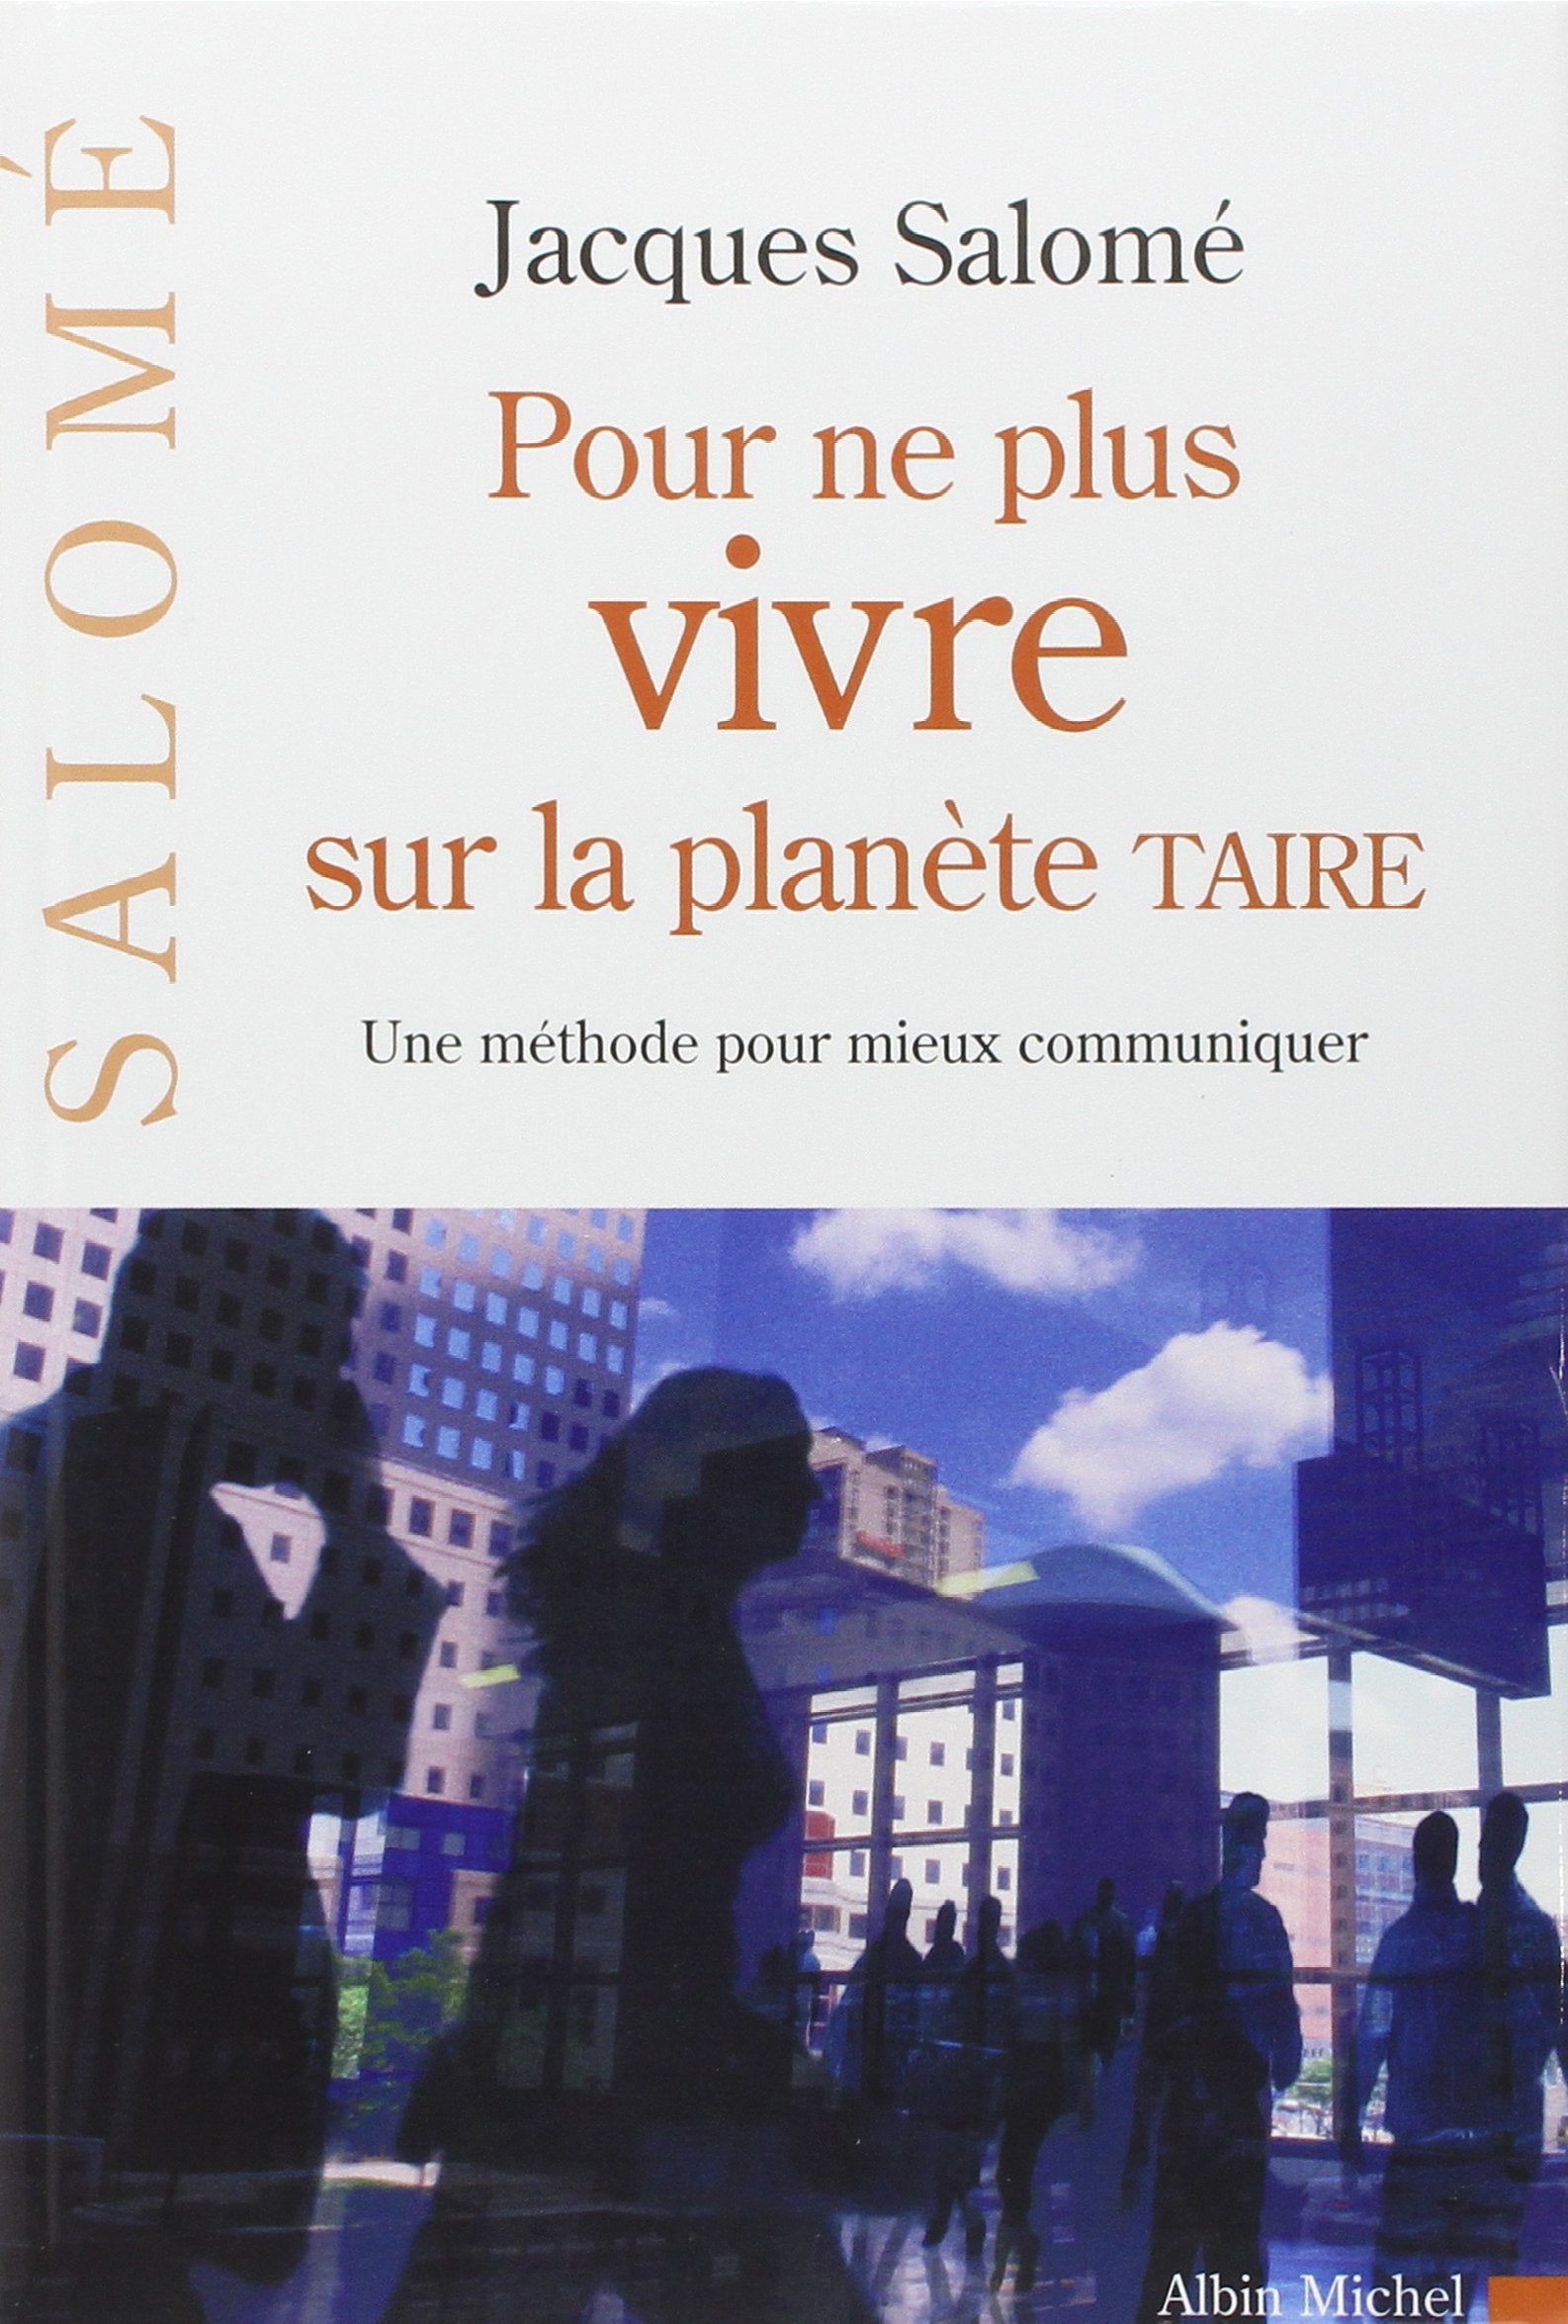 Livre ISBN 2226142835 Pour ne plus vivre sur la planète TAIRE : une méthode pour mieux communiquer (Jacques Salomé)